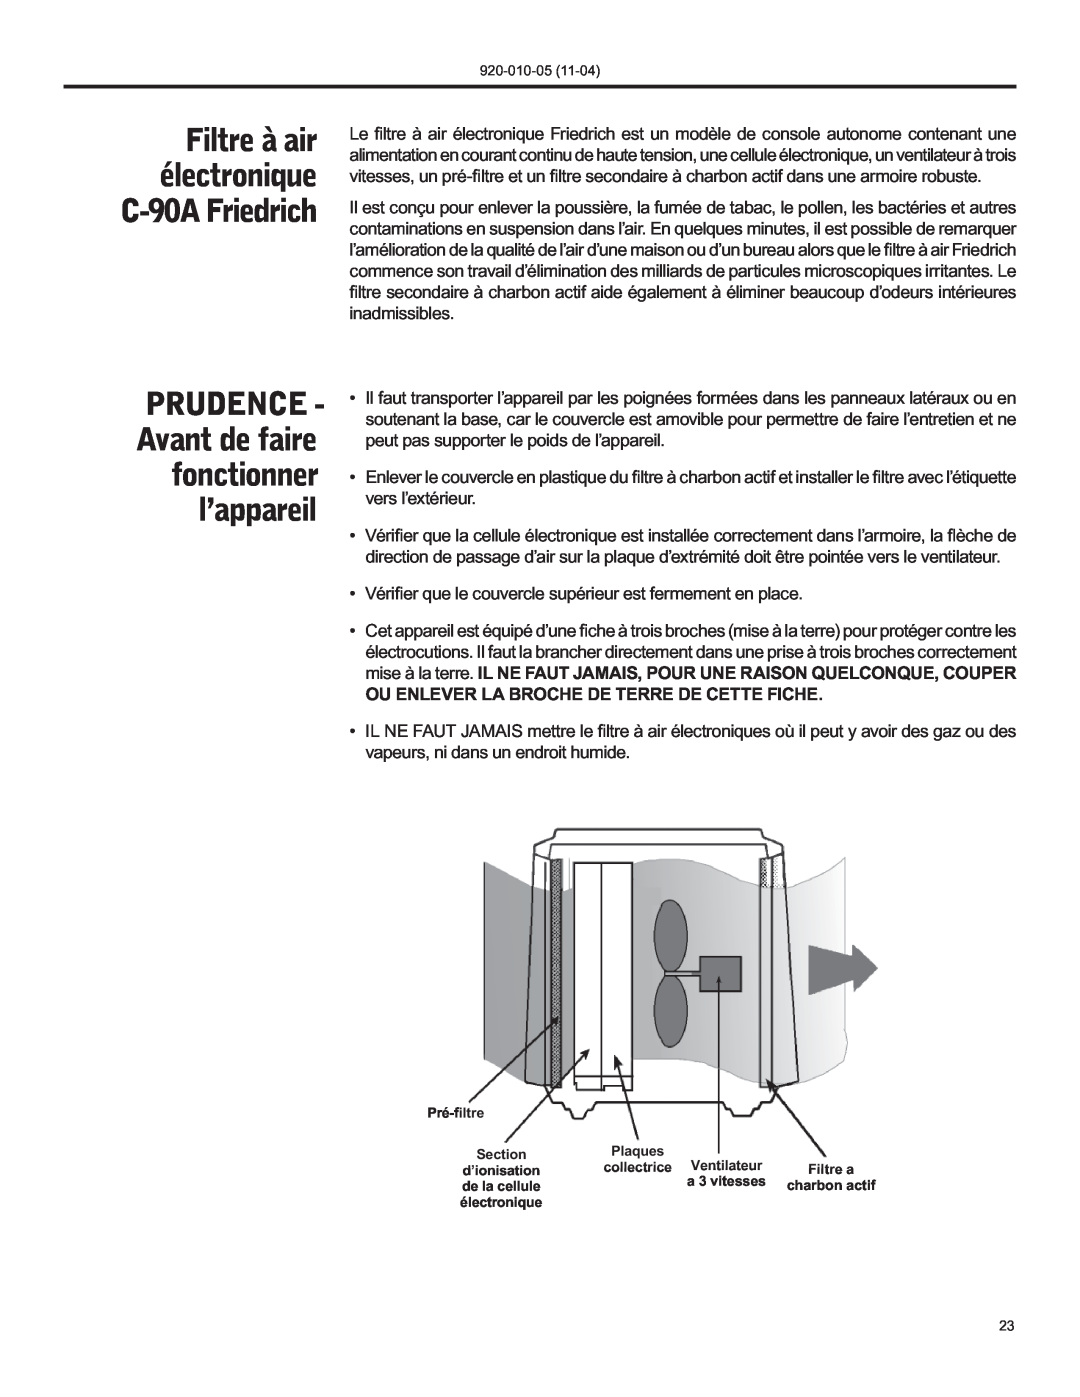 Nilfisk-ALTO manual PRUDENCE - Avant de faire fonctionner l’appareil, Filtre à air électronique C-90AFriedrich 